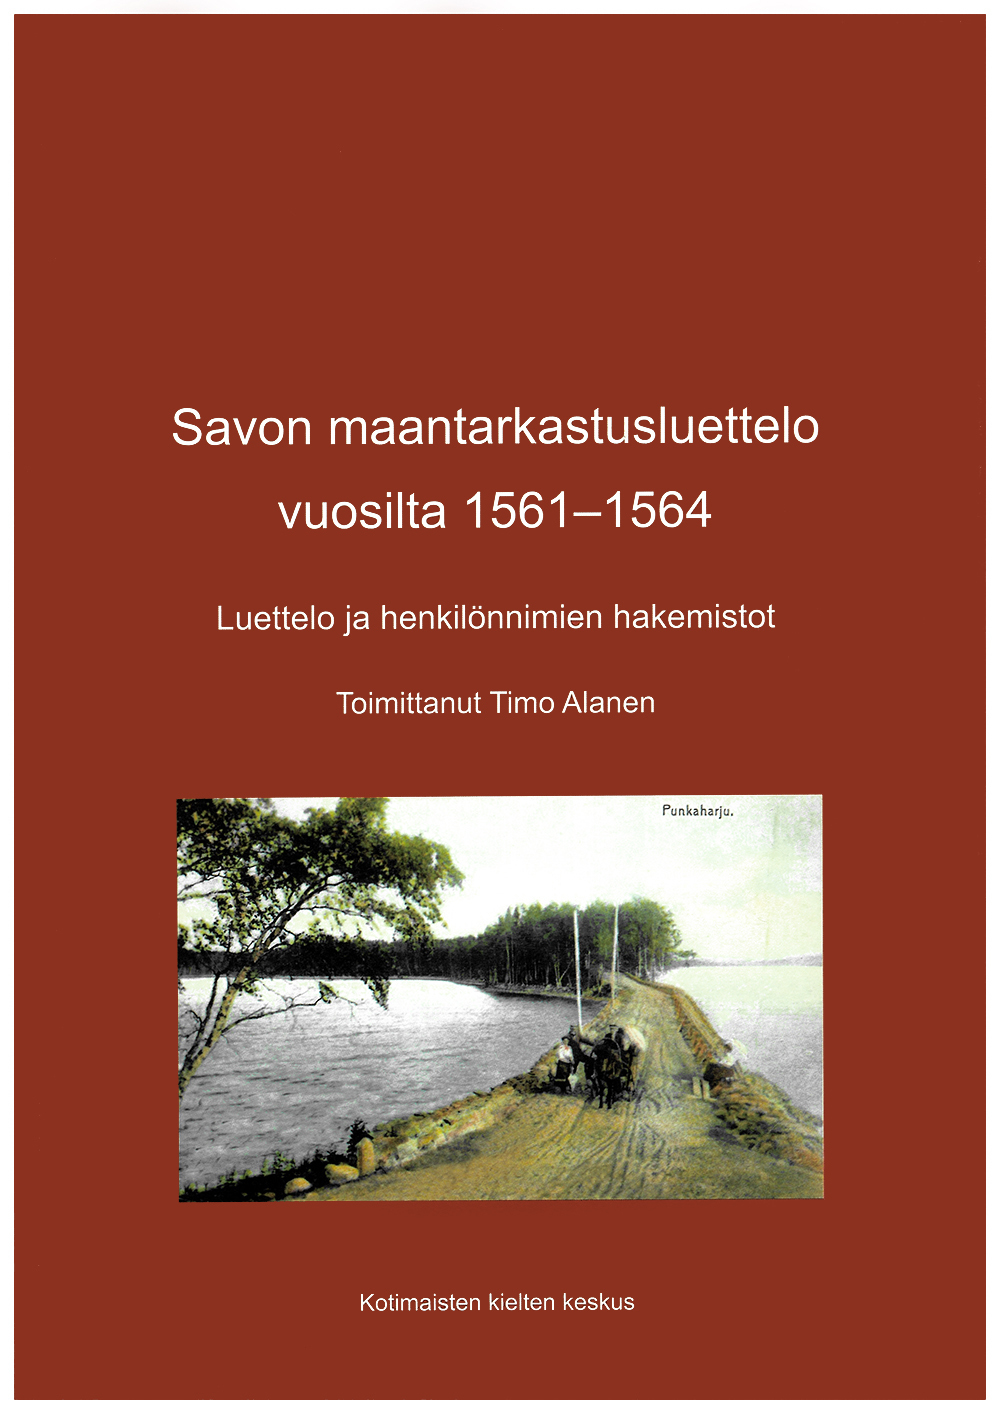 Savon maantarkastusluettelo 1561−1564 verkossa - Kotimaisten kielten keskus